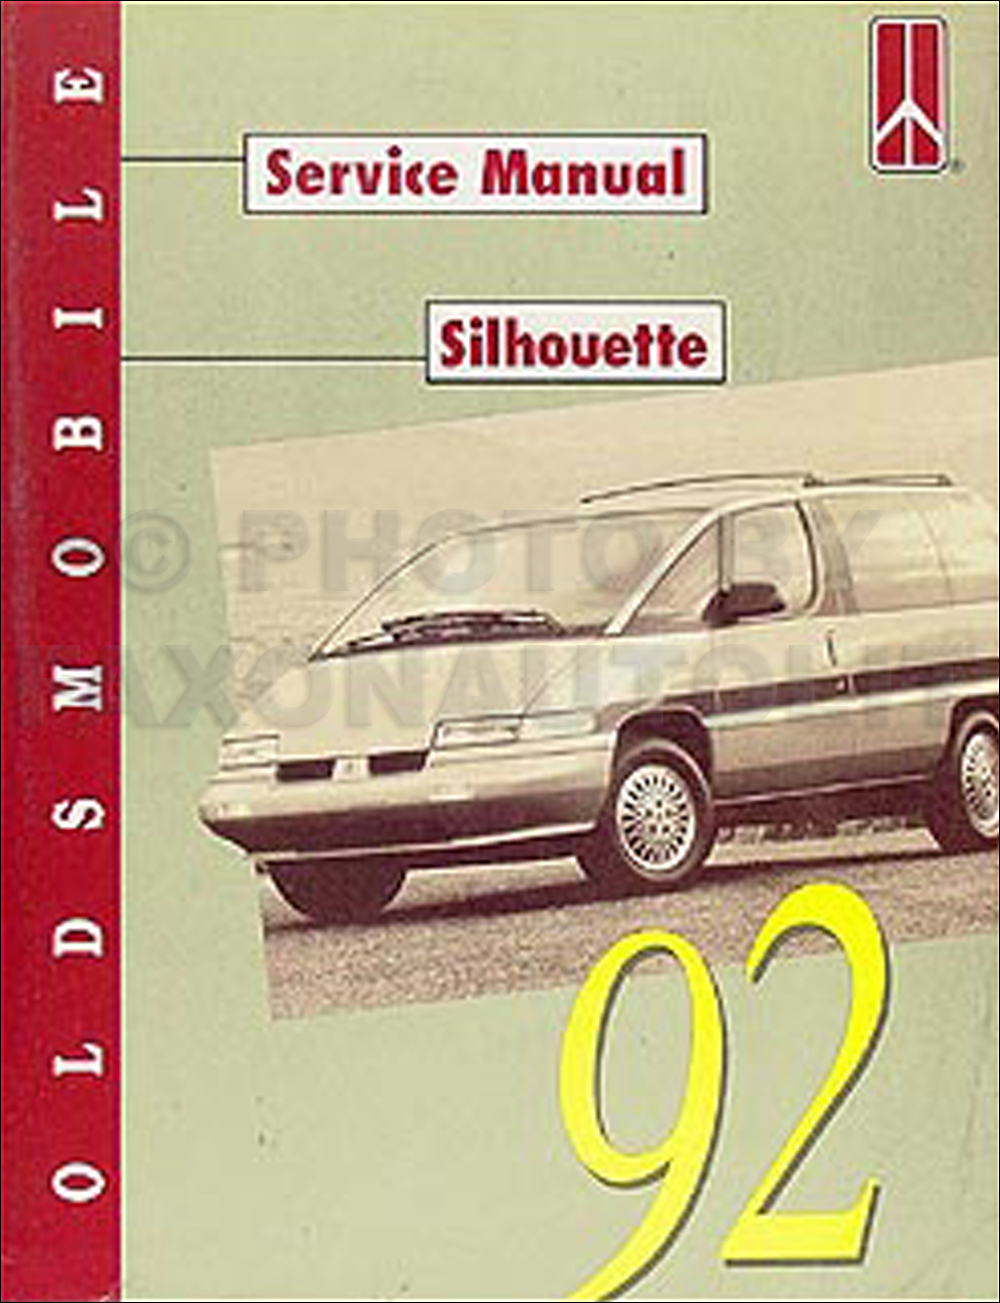 1992 Oldsmobile Silhouette Van Repair Manual Original 